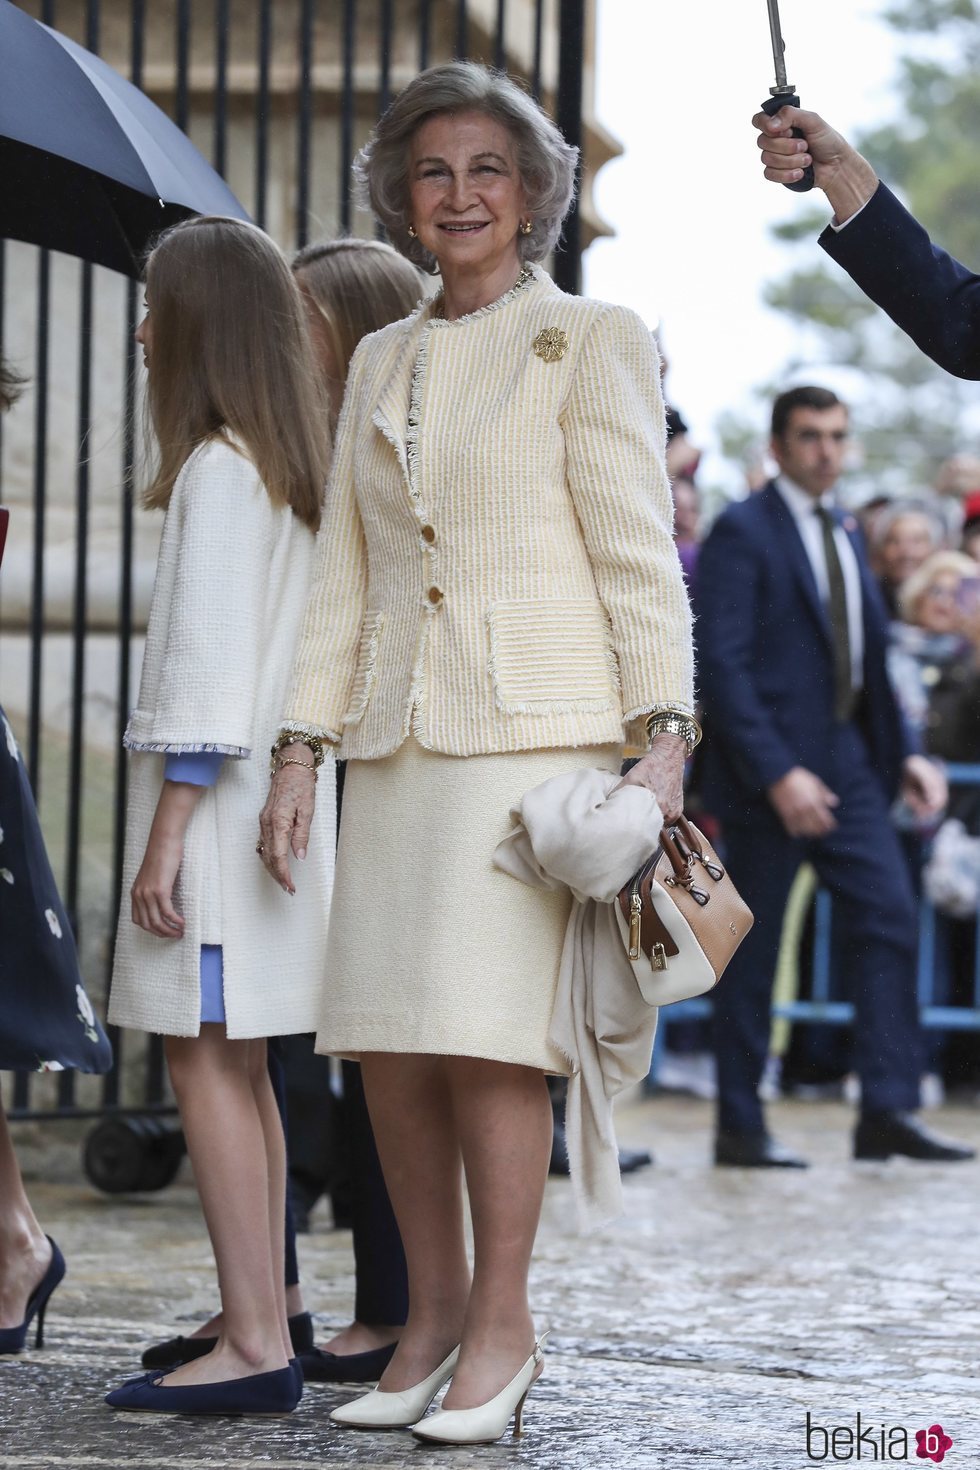 La Reina Sofía acudiendo a la Misa de Pascua 2019